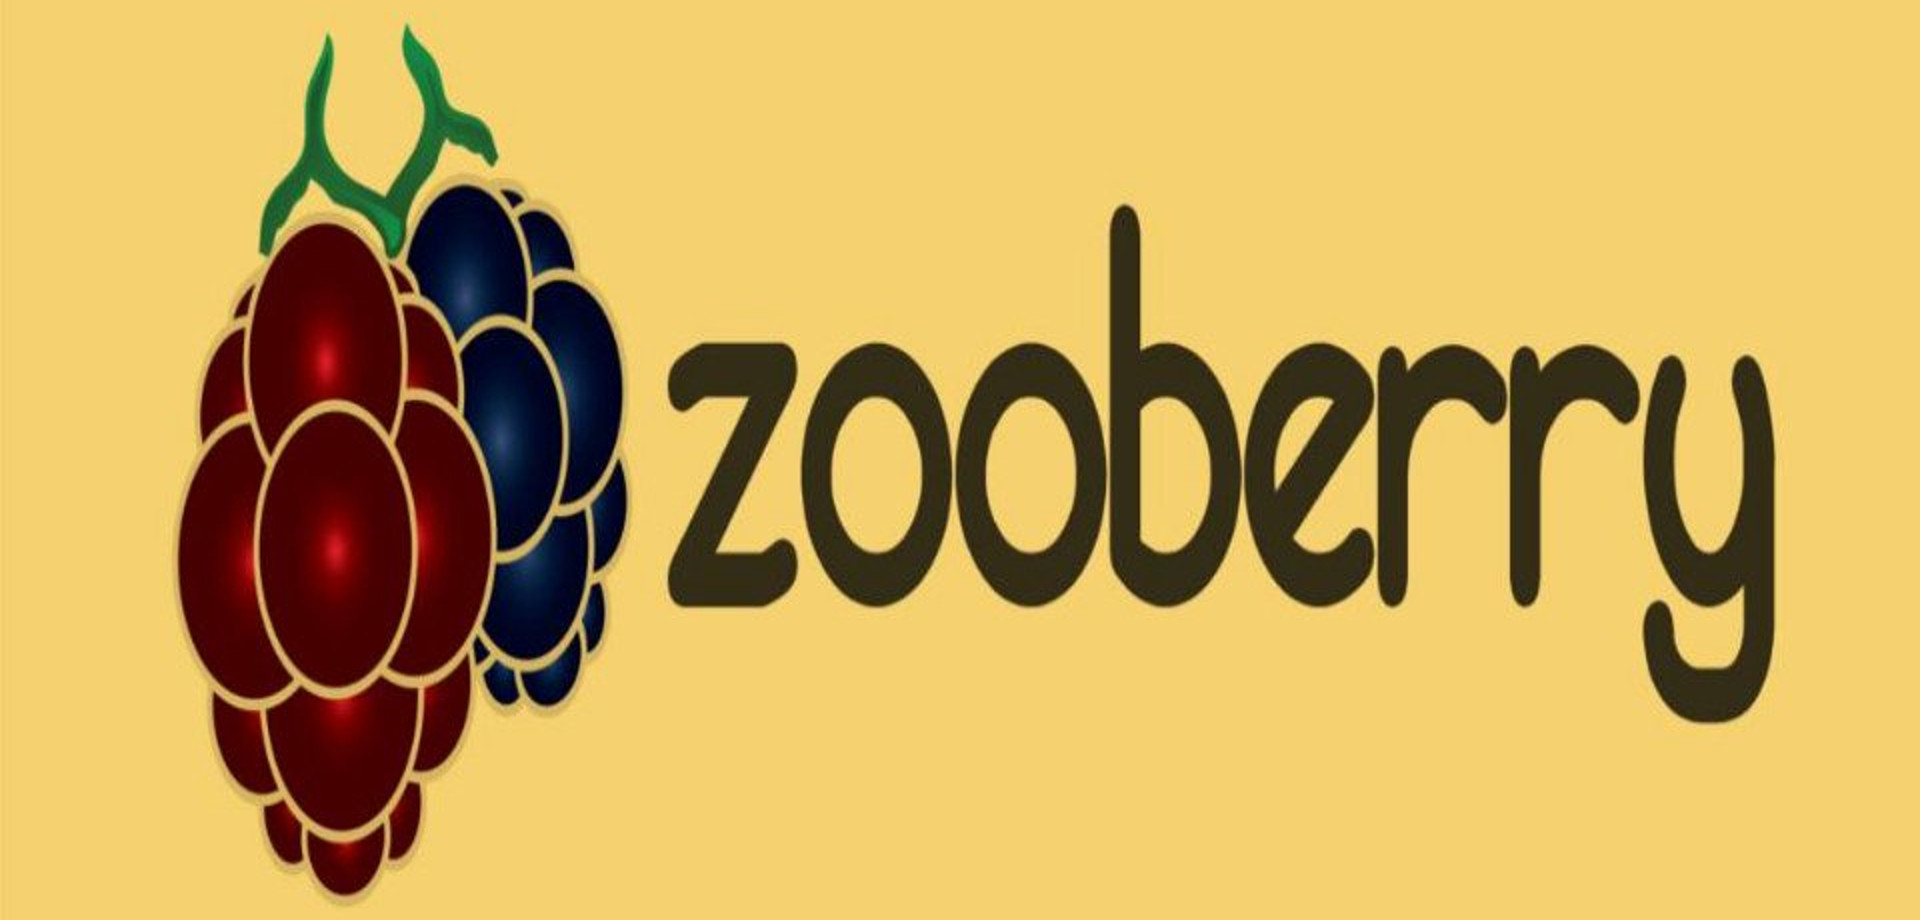 zooberry